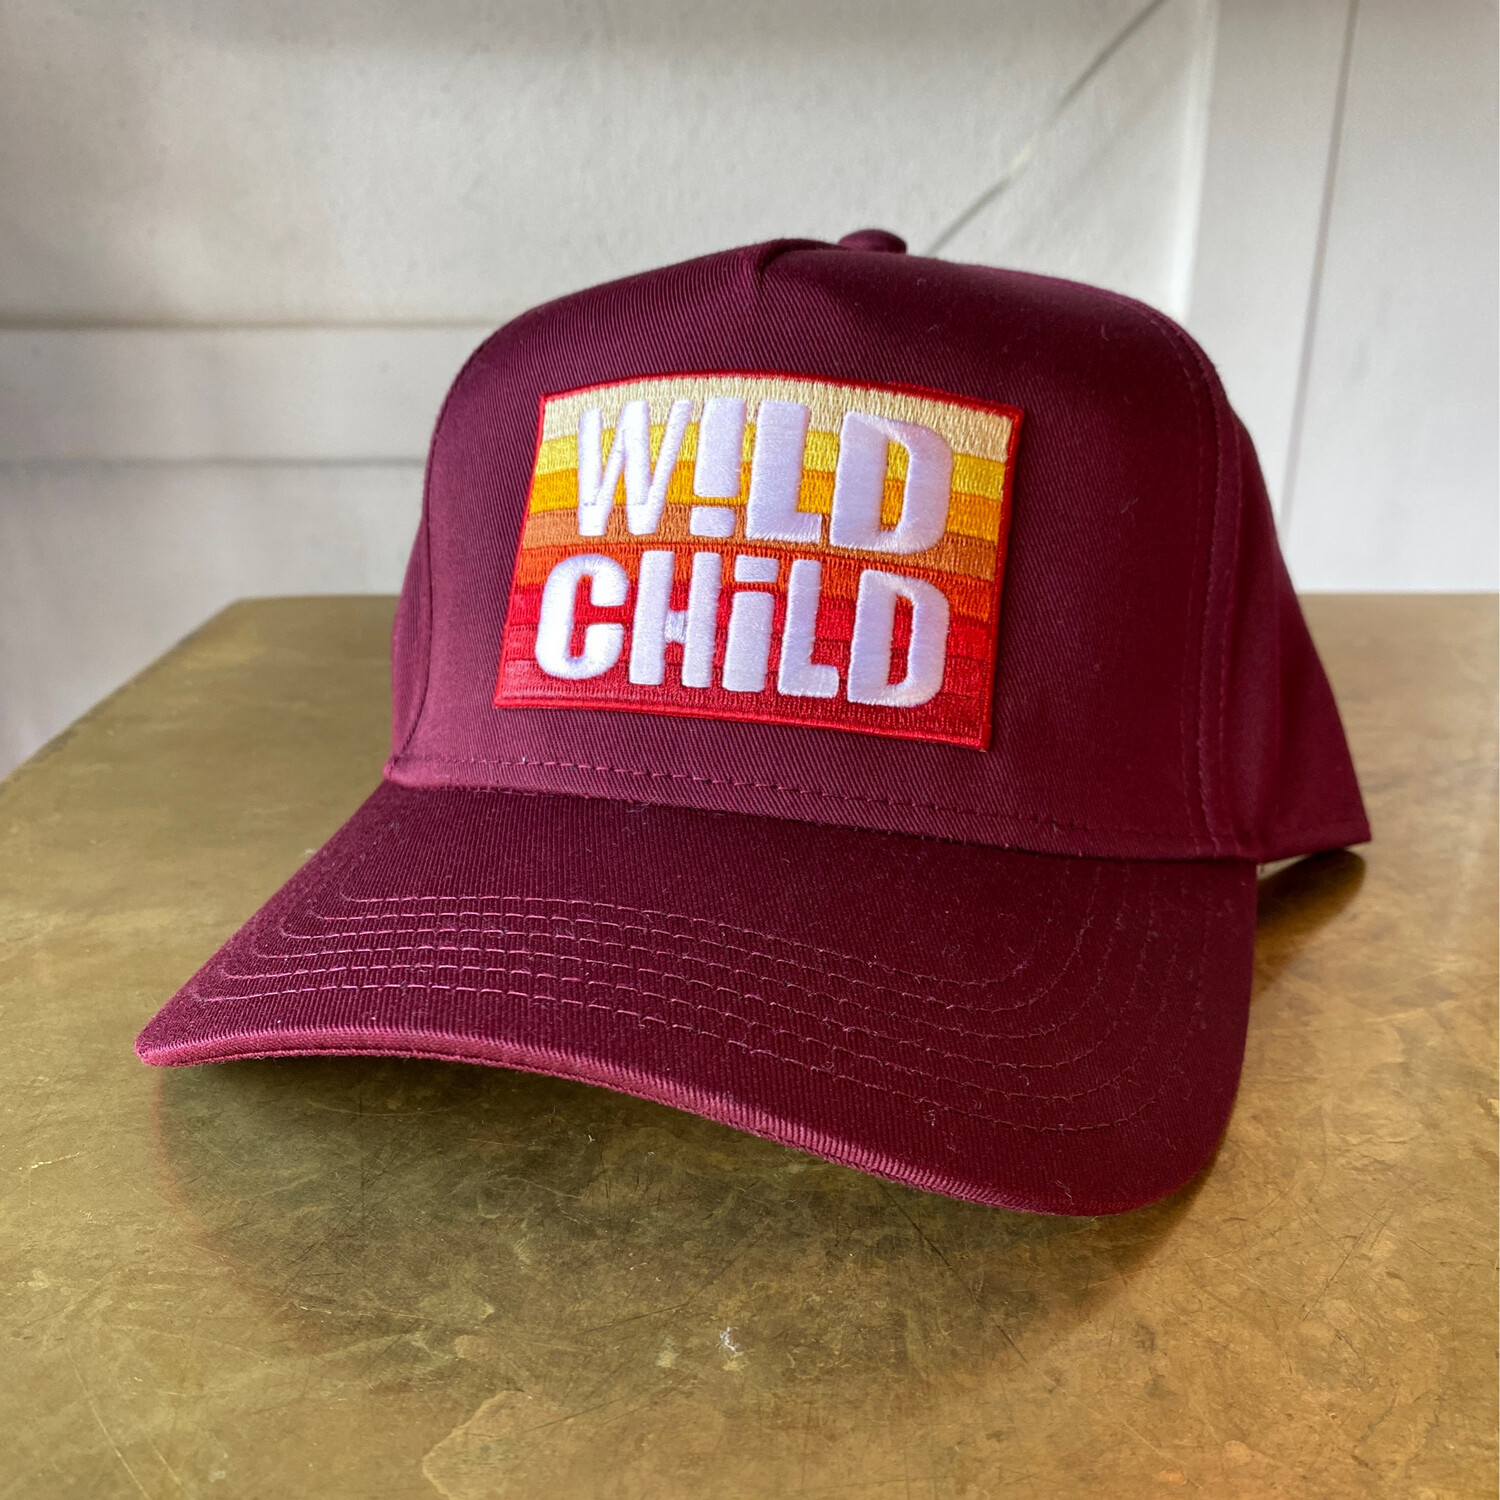 Wild Child Adult Hat - Maroon